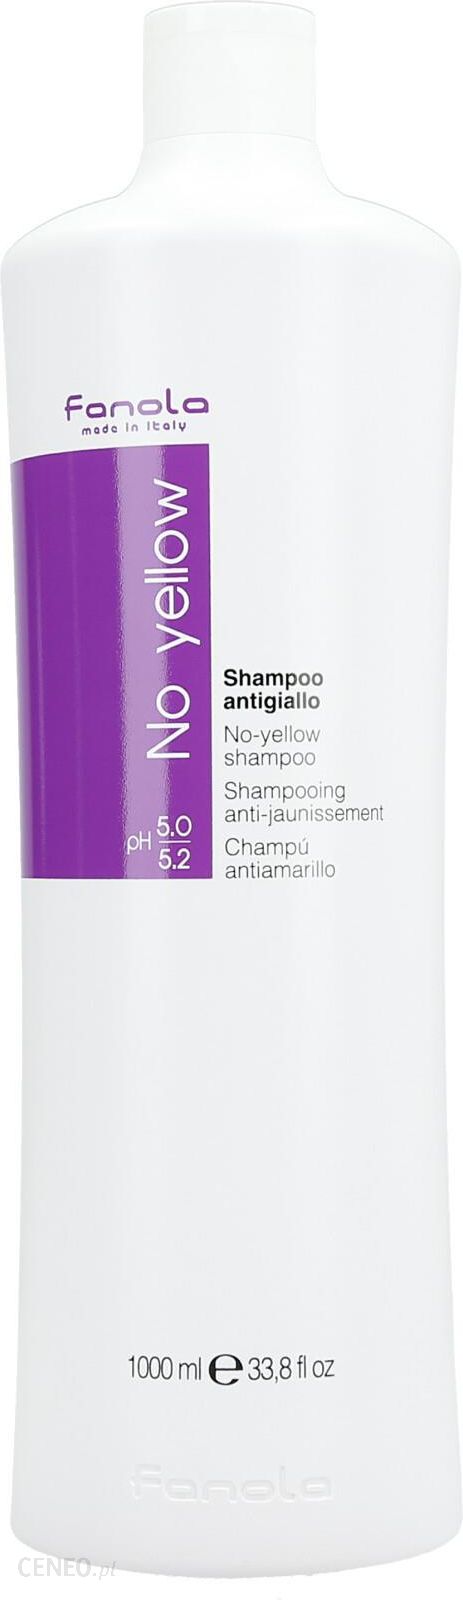 fanola szampon fioletowy 1000ml